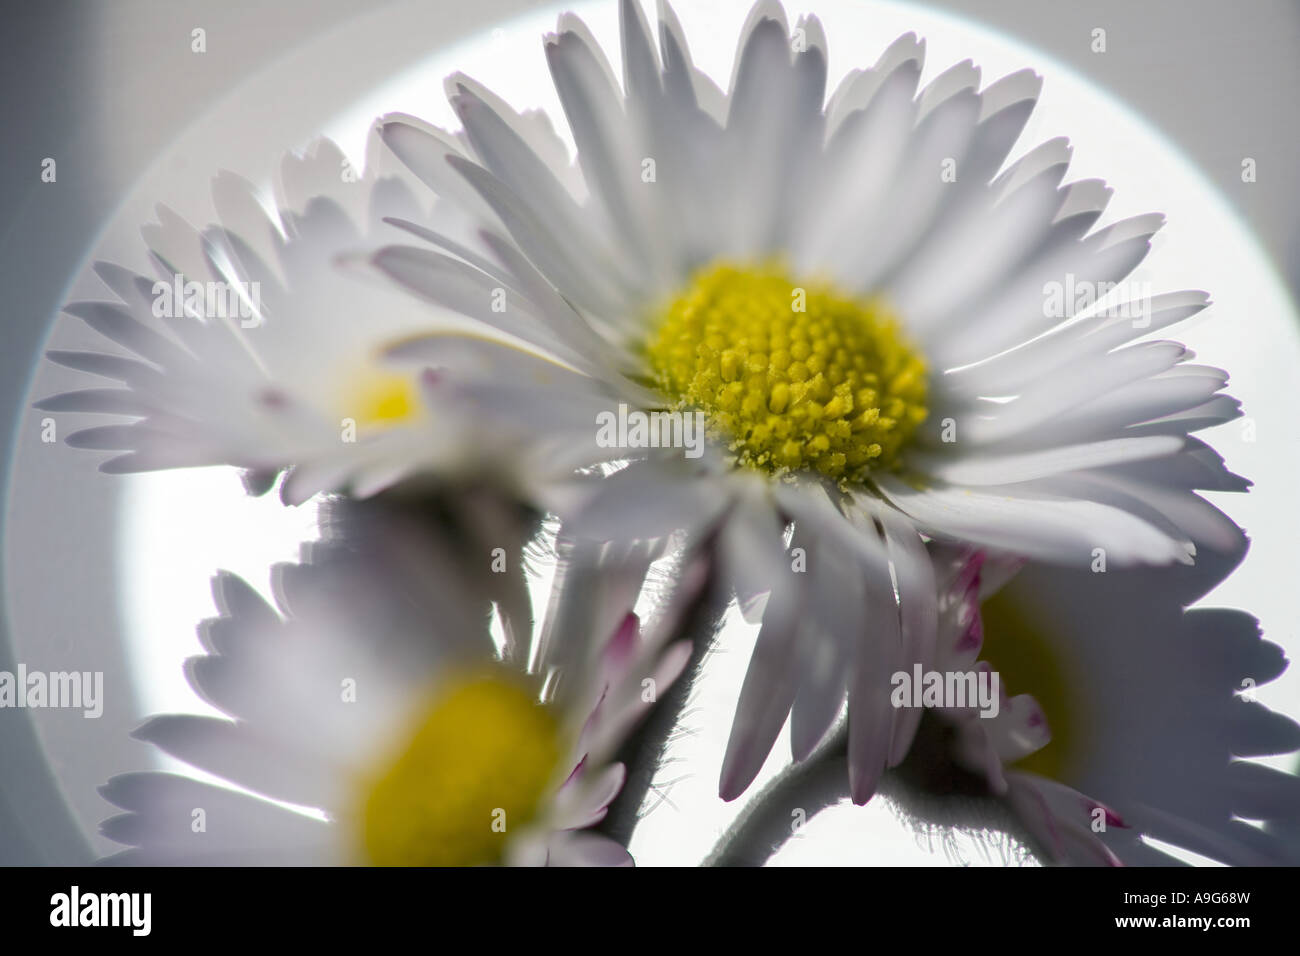 common daisy, lawn daisy, English daisy (Bellis perennis), inflorescences, Germany, Saxony Stock Photo